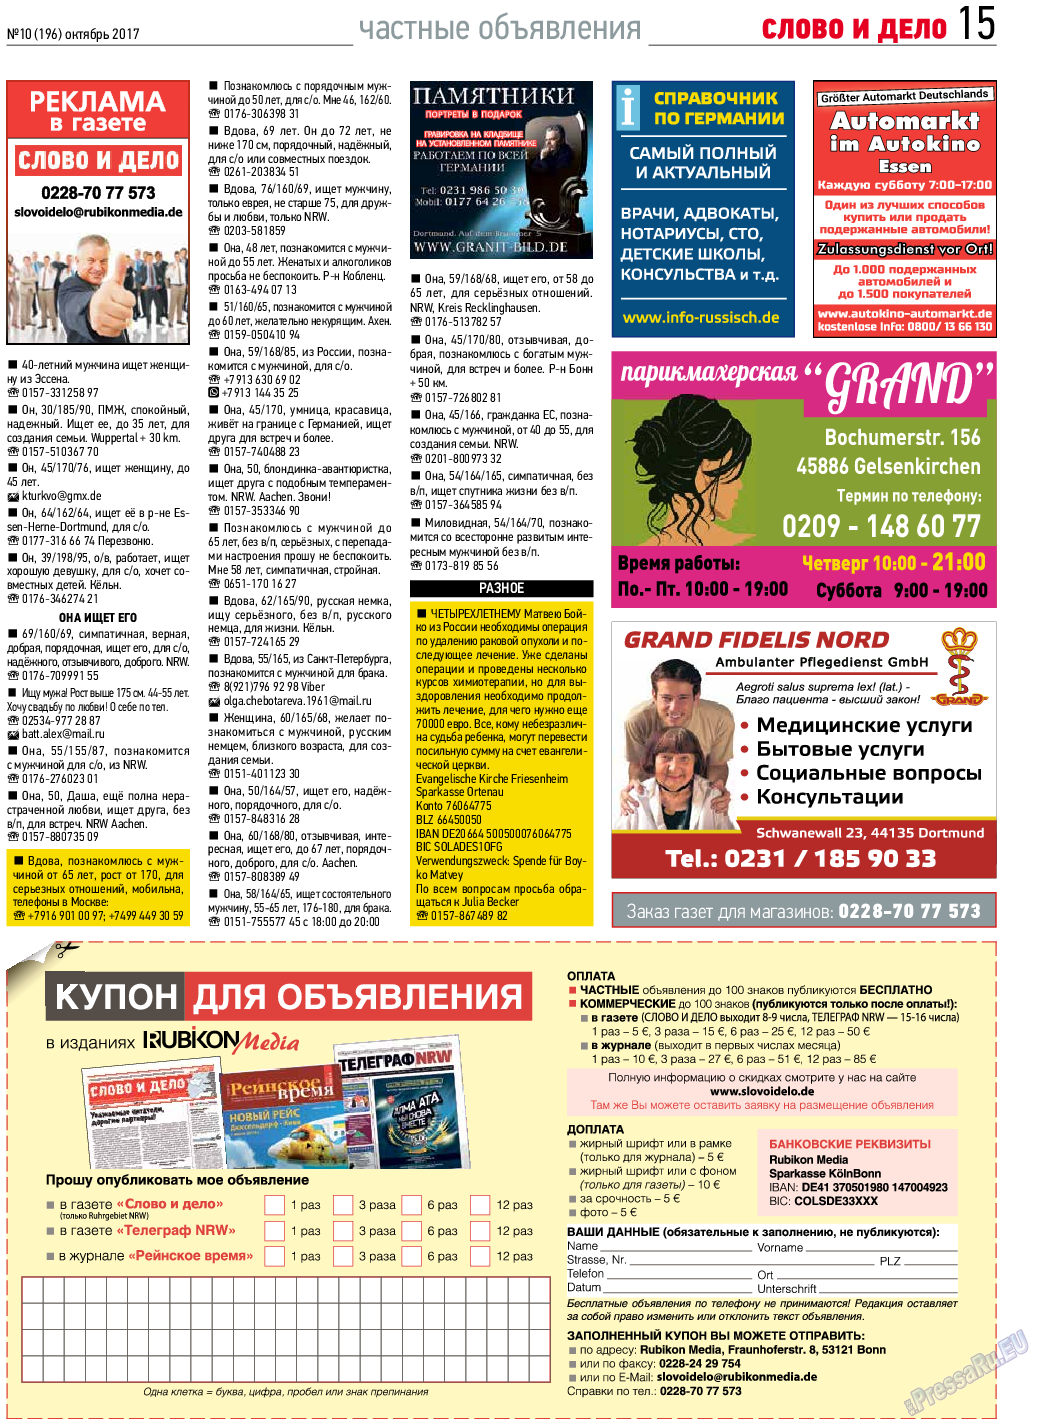 Слово и дело, газета. 2017 №10 стр.15